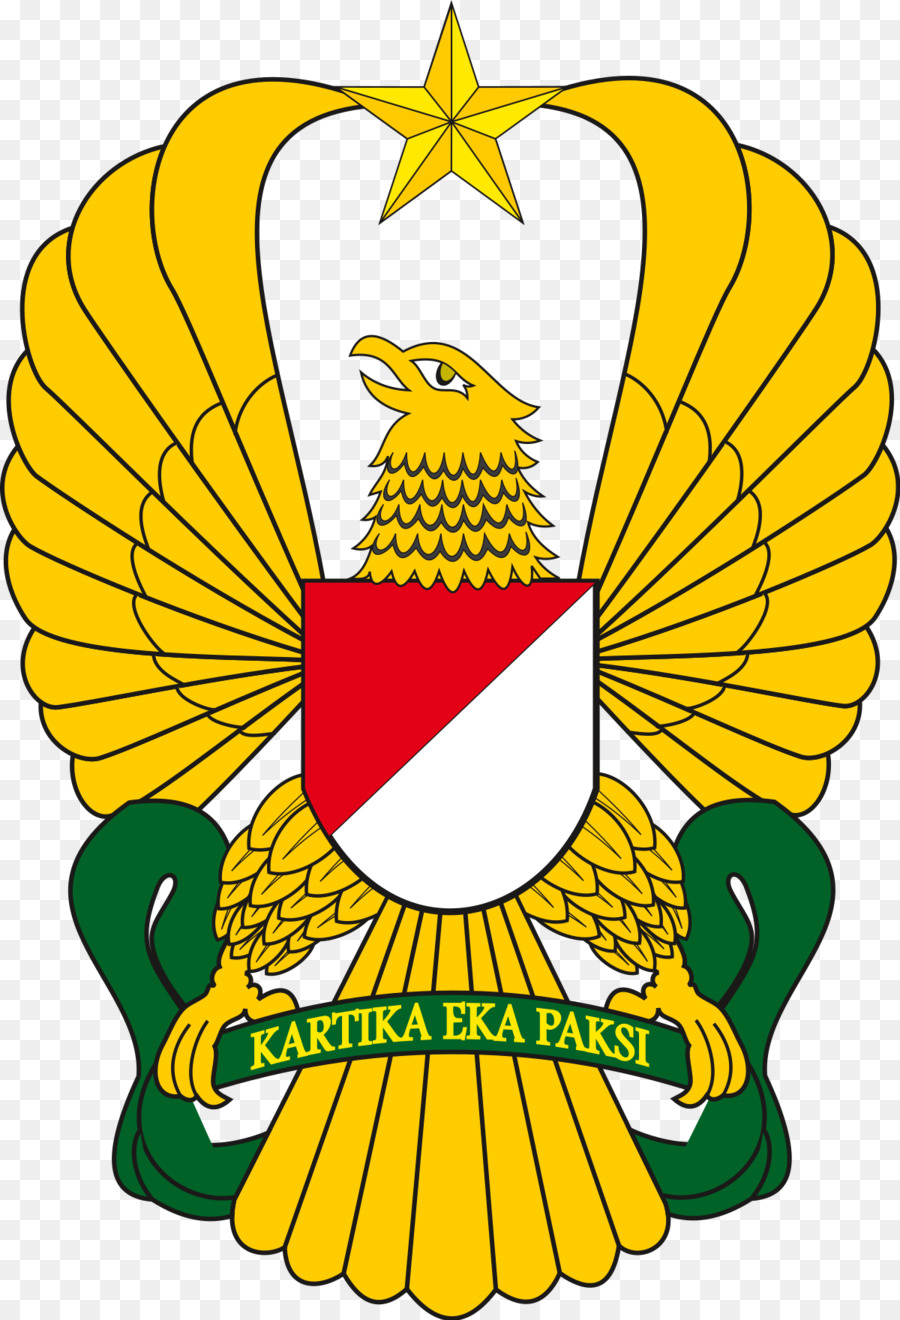 Esercito Indonesiano Nazionale Indonesiano Militare Delle Forze Armate, - esercito